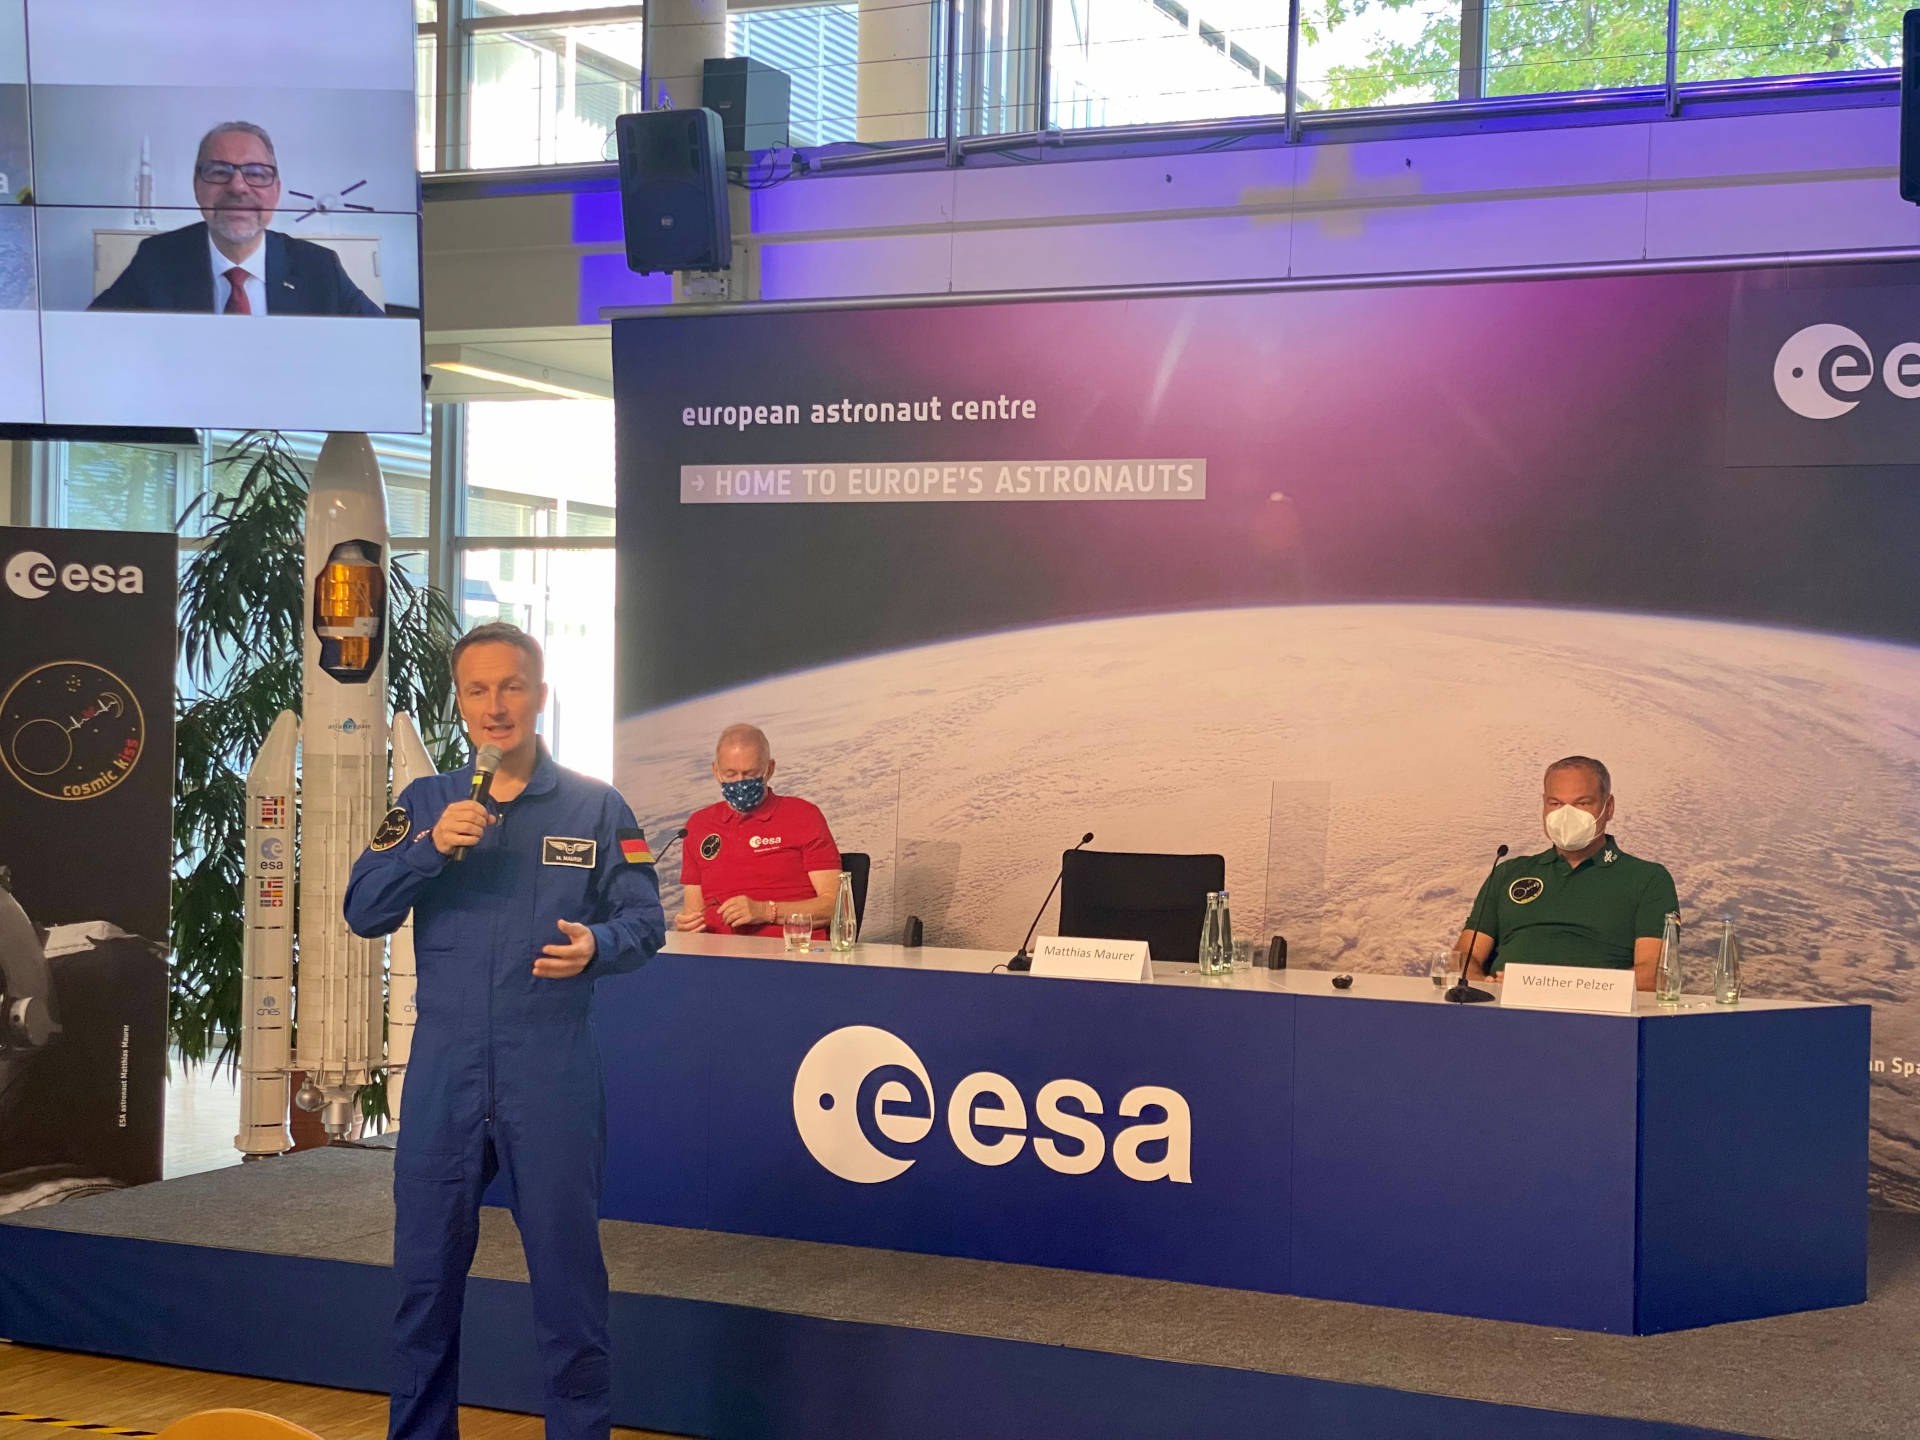 Der deutsche ESA-Astronaut Matthias Maurer bei der Pressekonferenz zu seiner ISS-Mission "Cosmic Kiss" im Europäischen Astronautenzentrum EAC